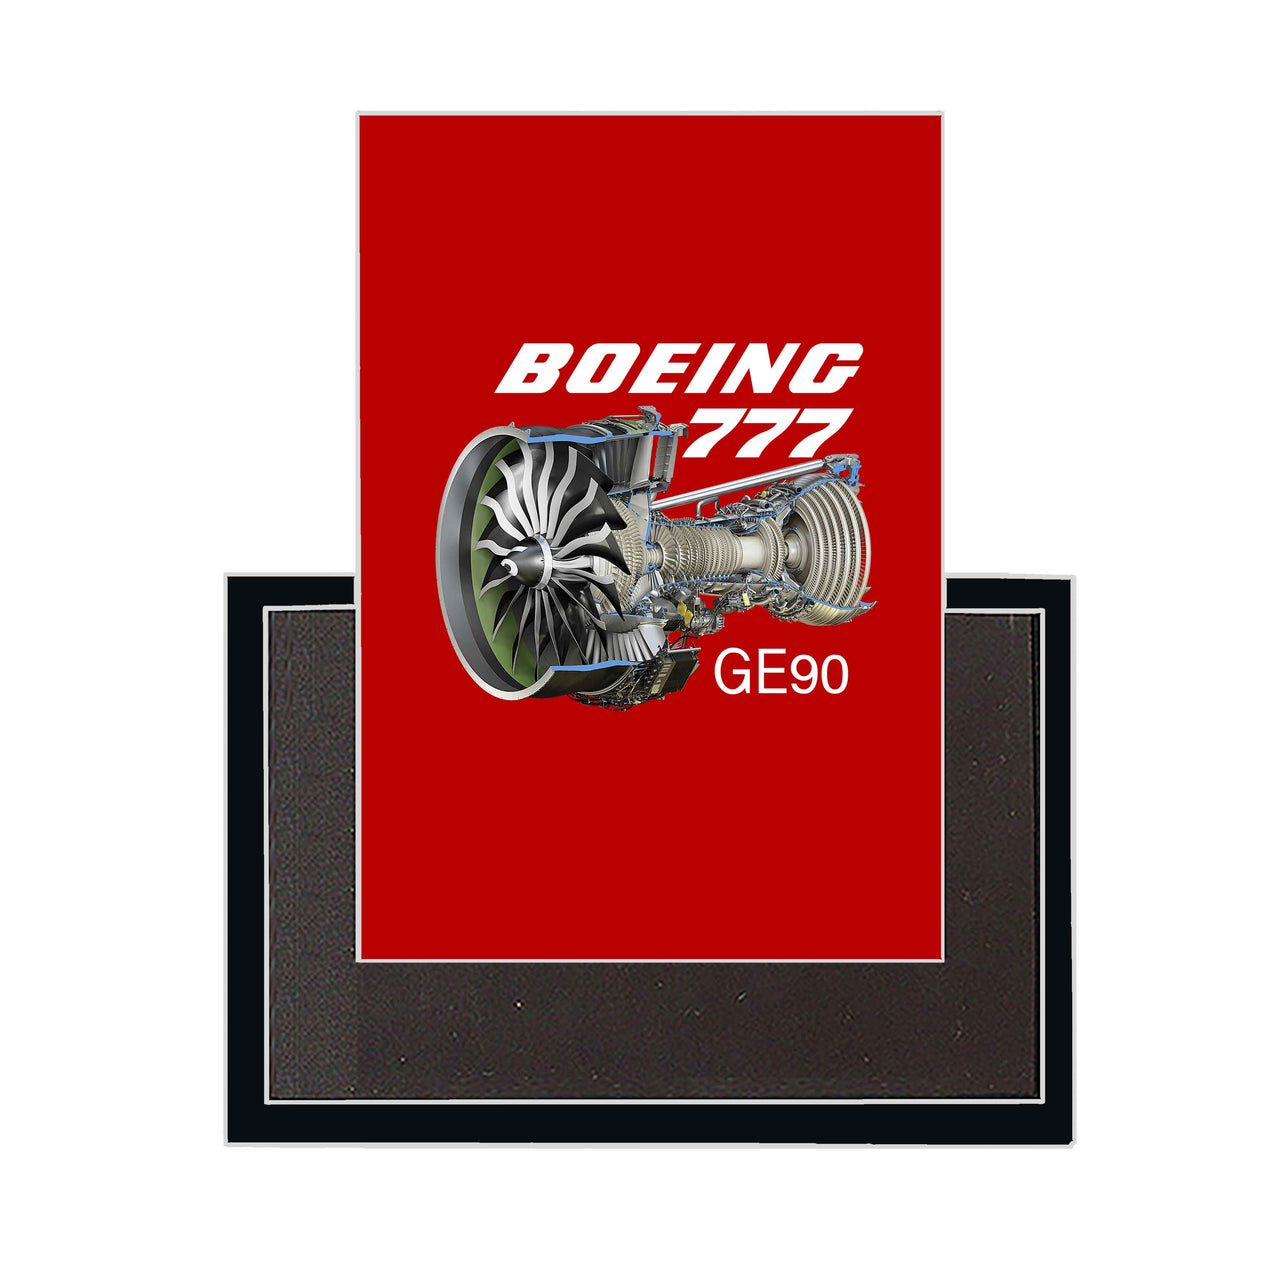 Boeing 777 & GE90 Engine Designed Magnets